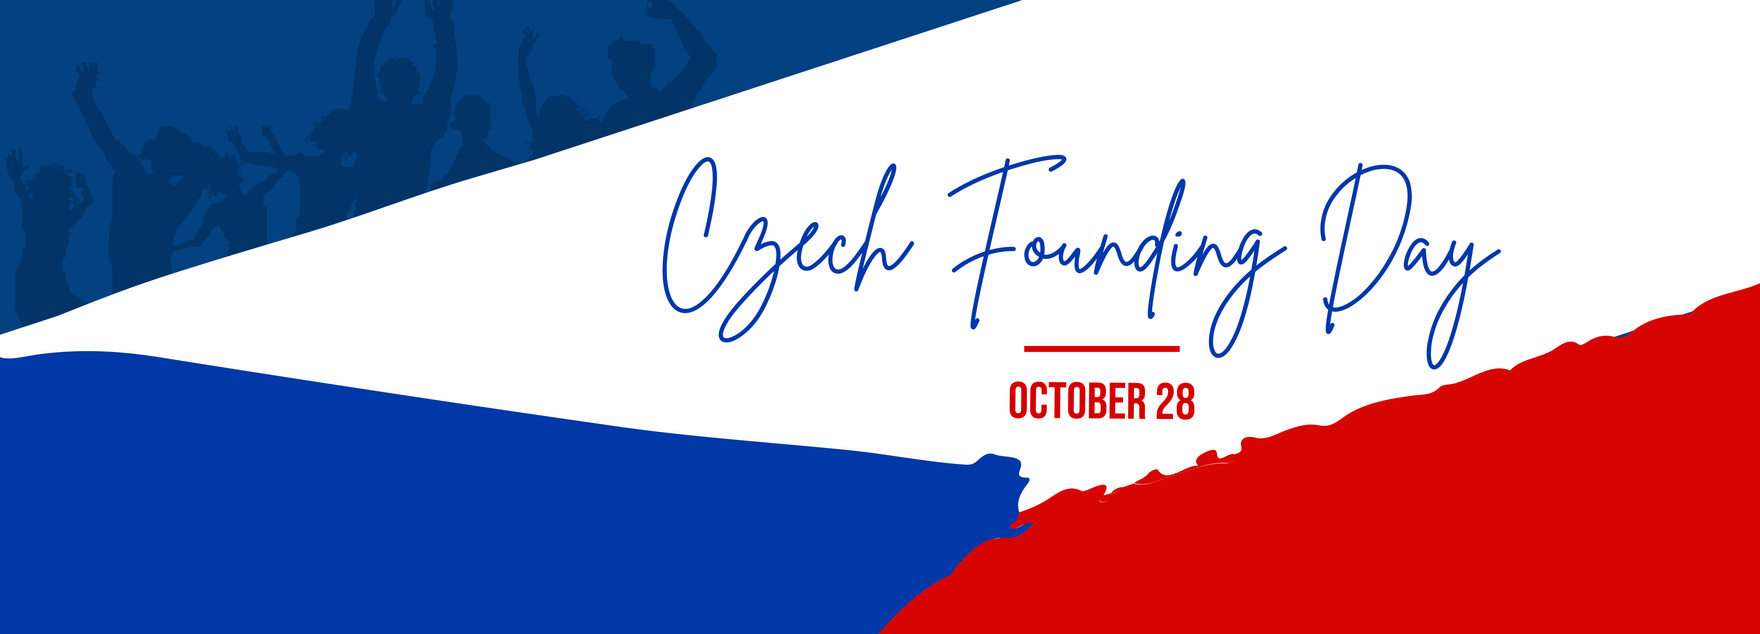 Czech Founding Day Banner